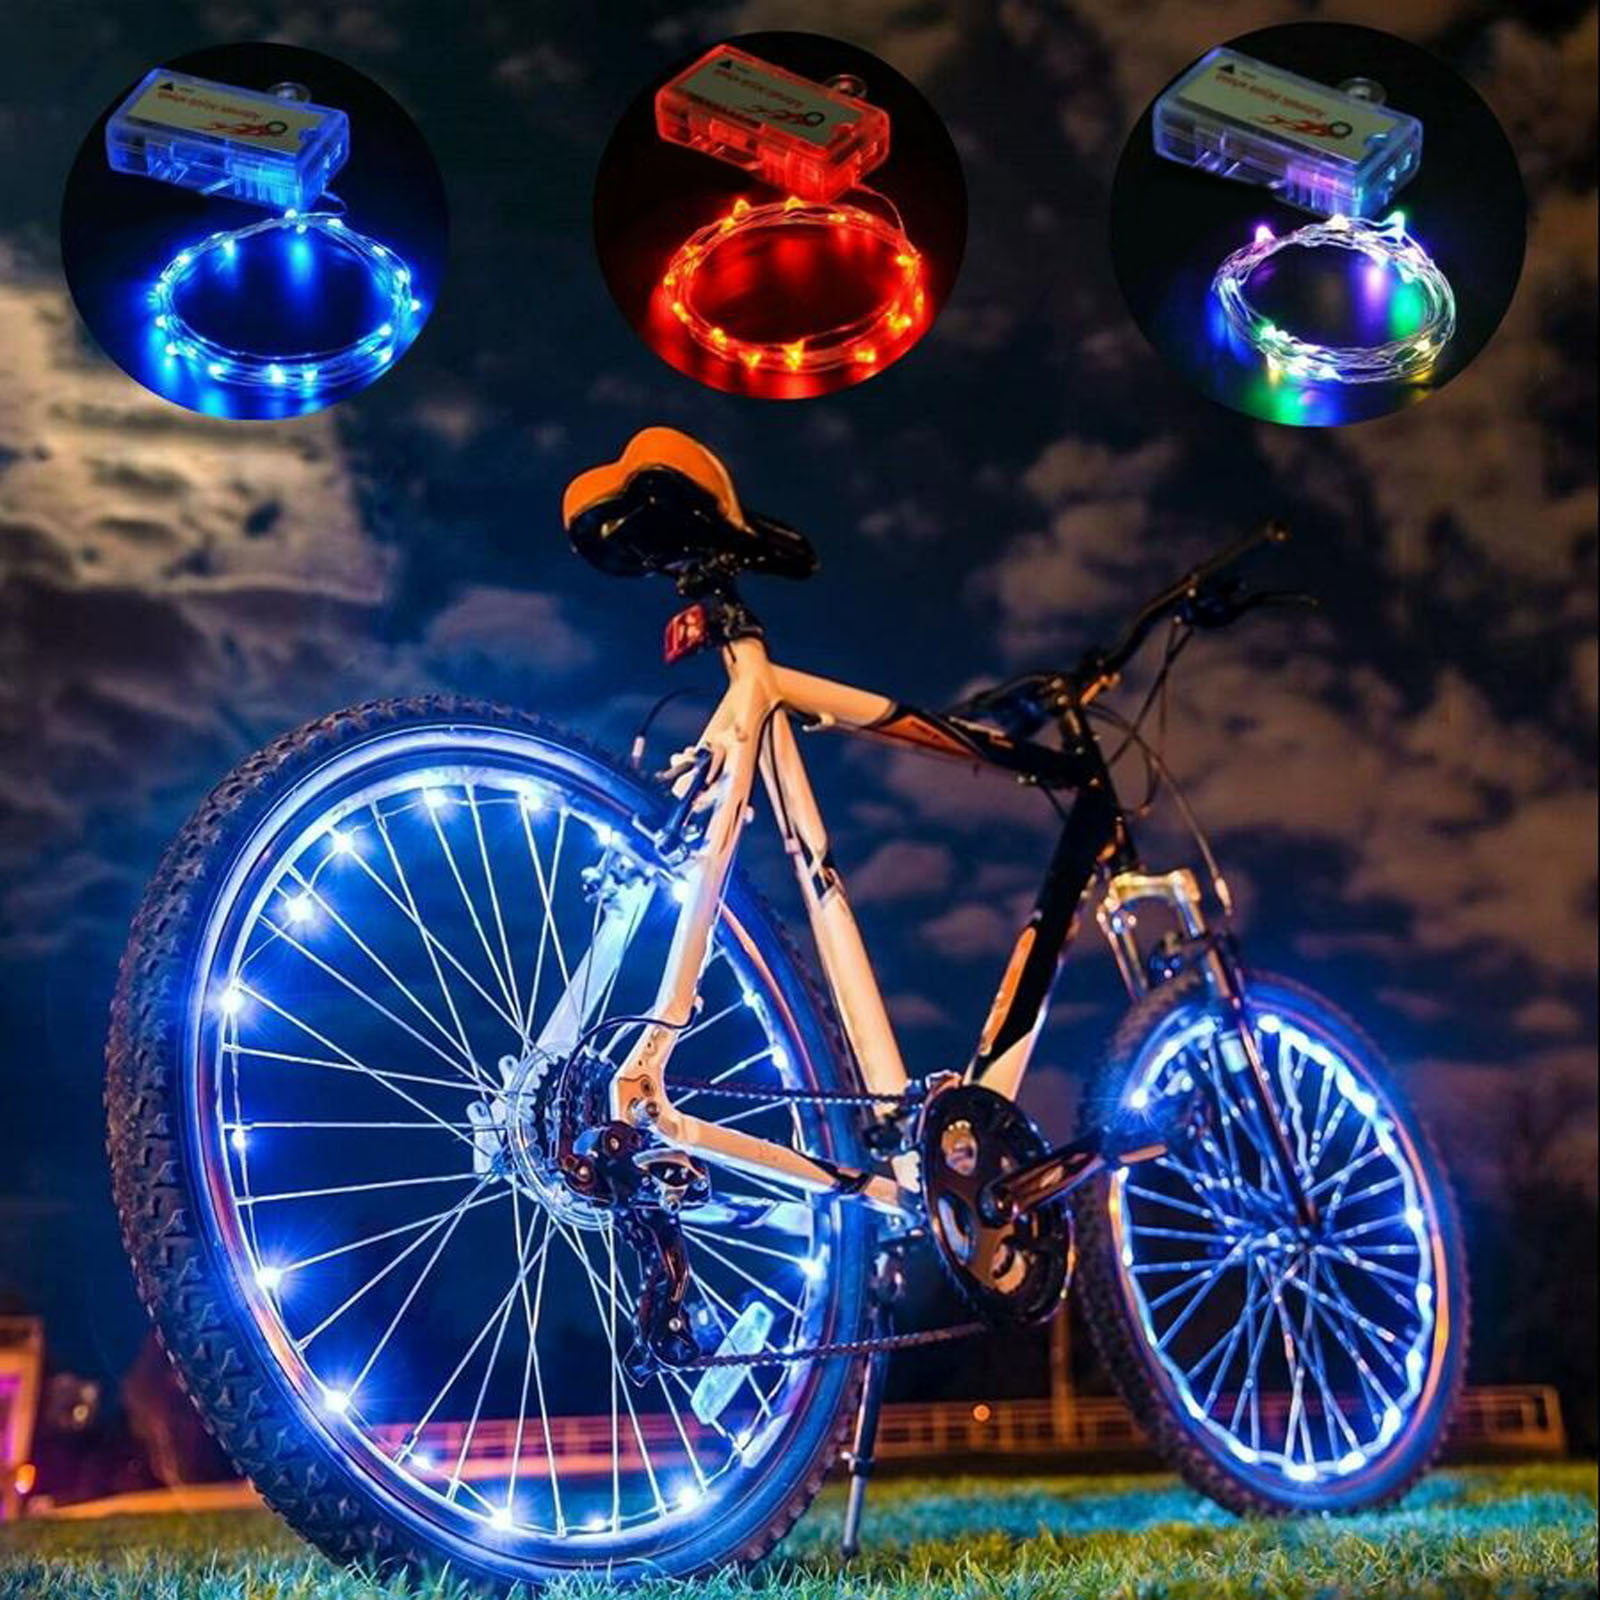 Poliyu Bike Wheel Lights Waterproof Bicycle Wheel Lights Outdoor Bike Lights Led Bike Wheel Lights 2 Pack Bike Accessories Batteries Included Bike Tire Valve Steam Lights